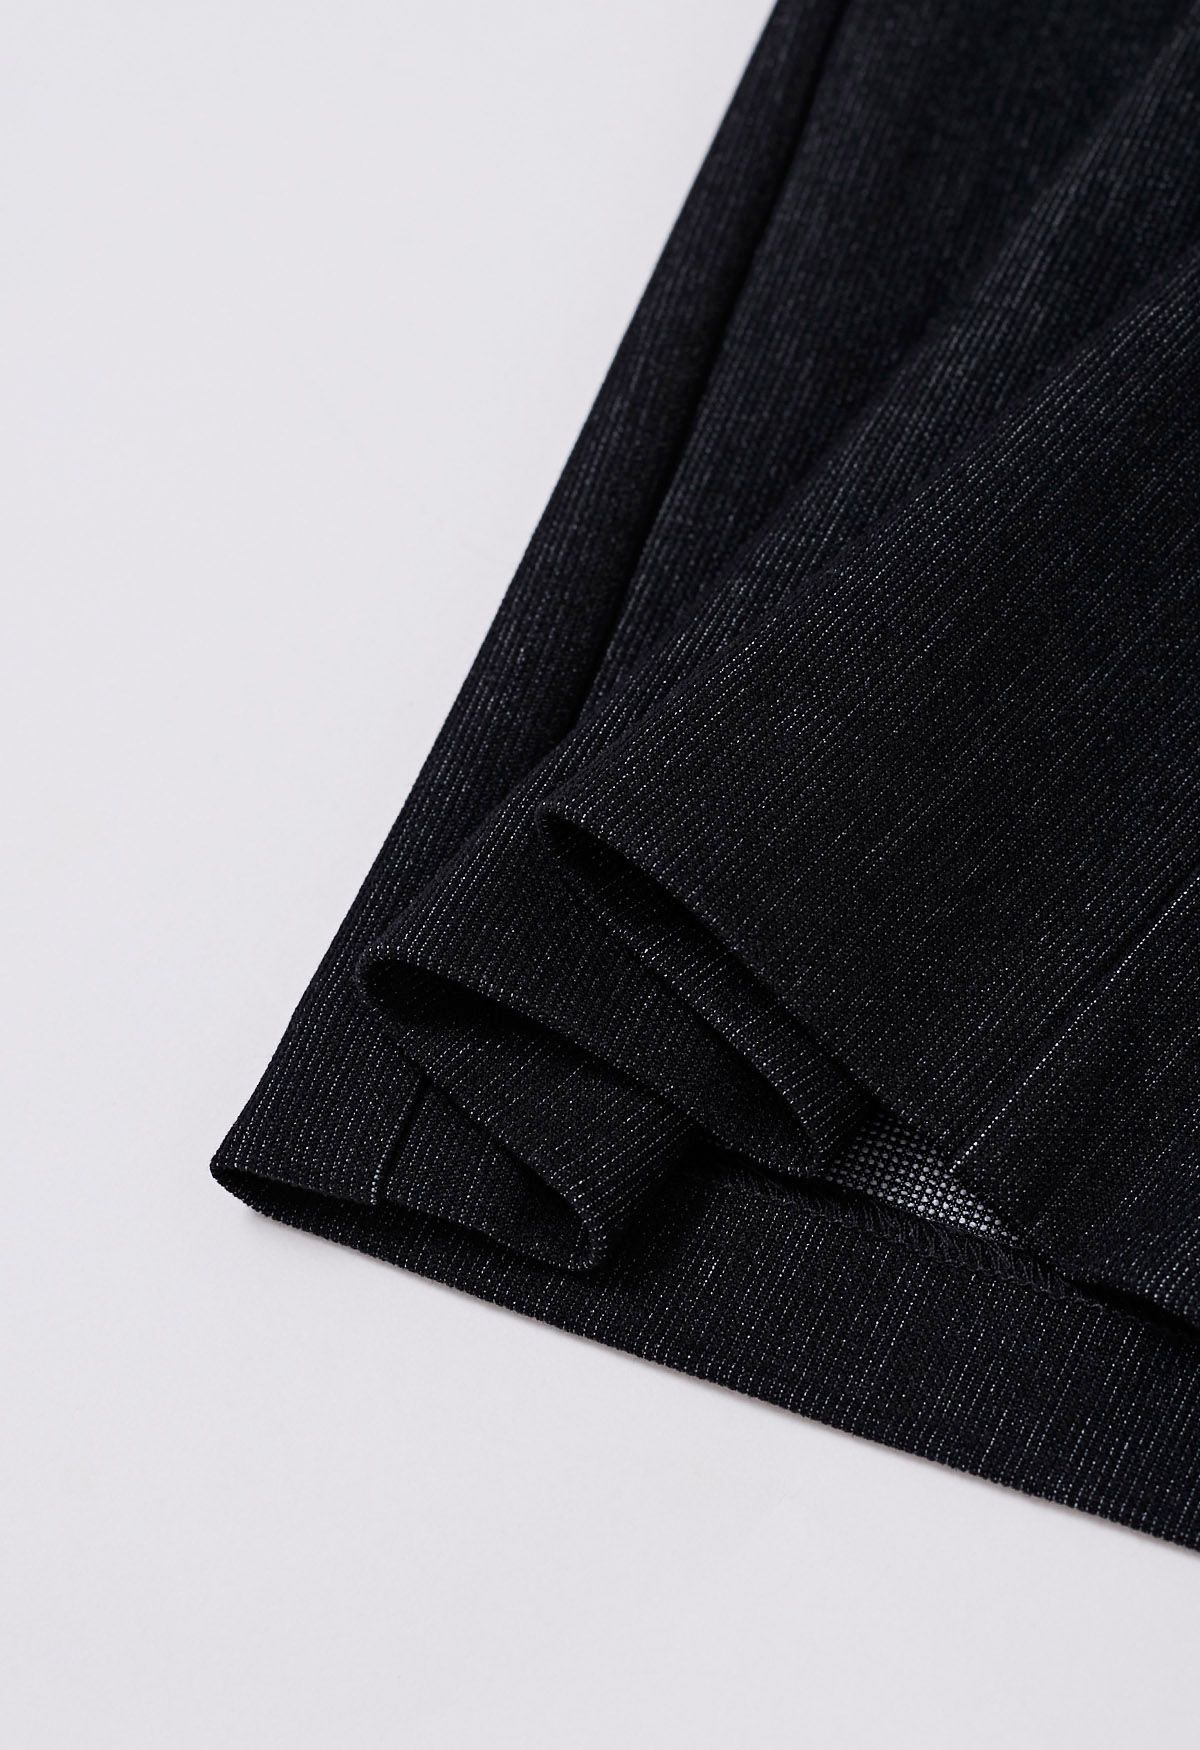 Pantalones anchos plisados cómodos a medida en negro